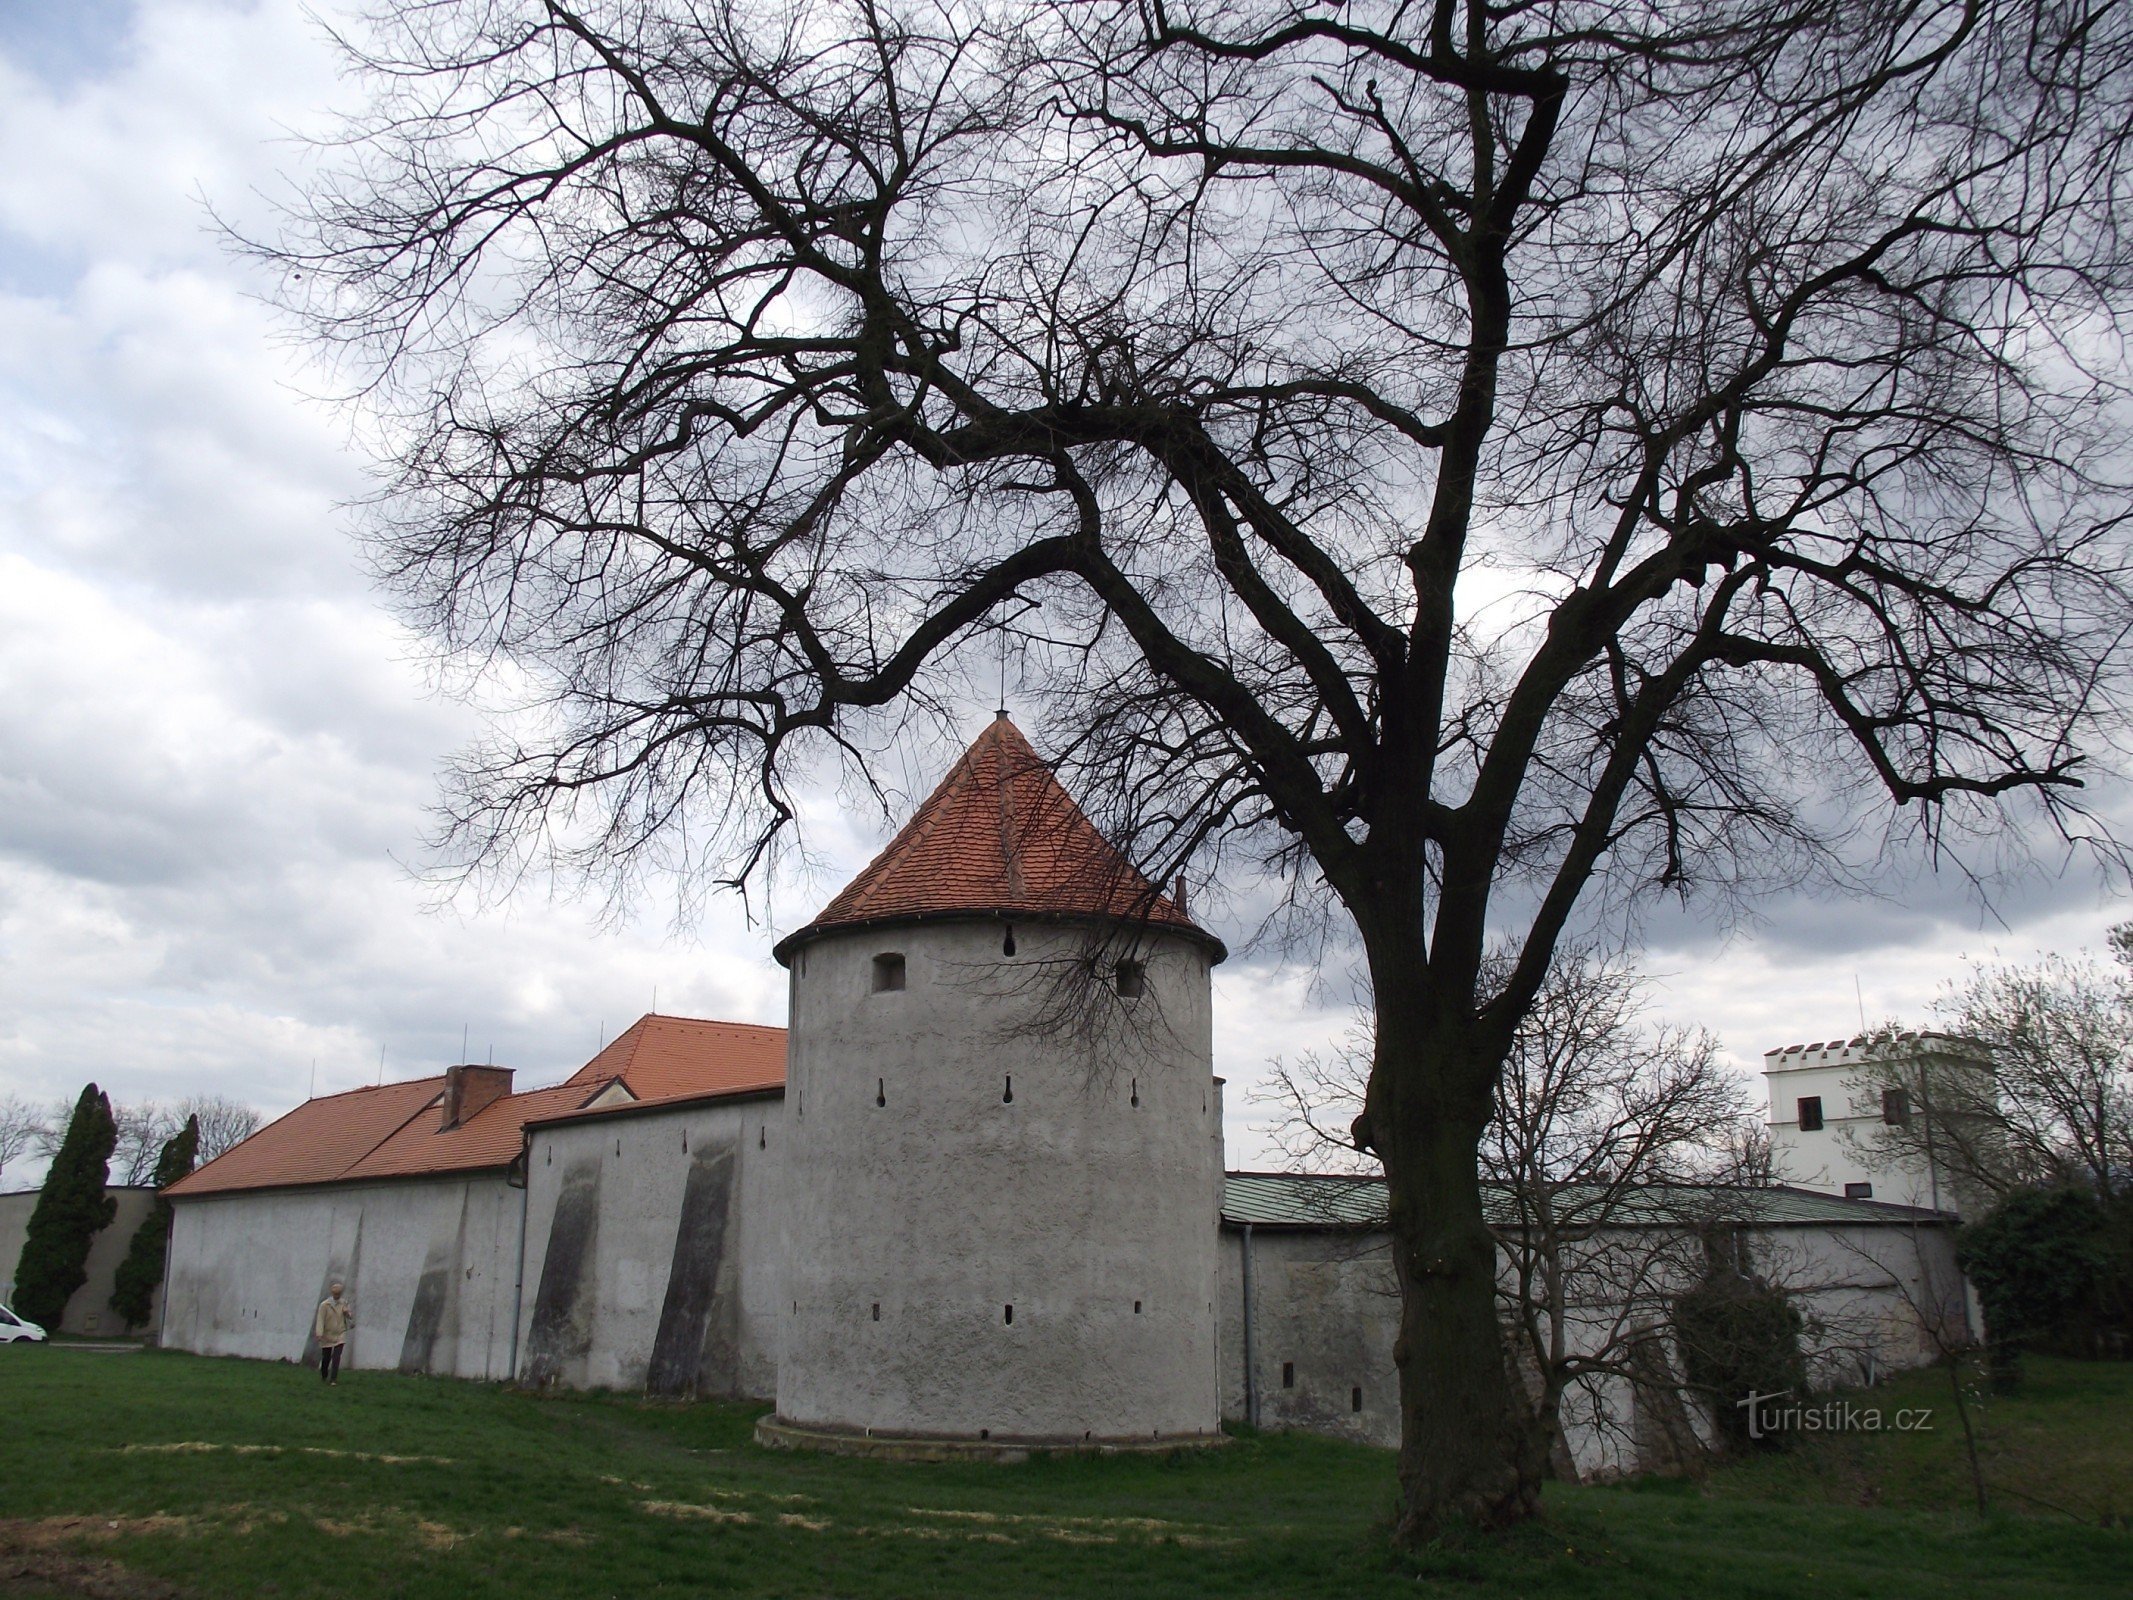 byens fæstningsværker over slottet henføres til førstnævnte slottet